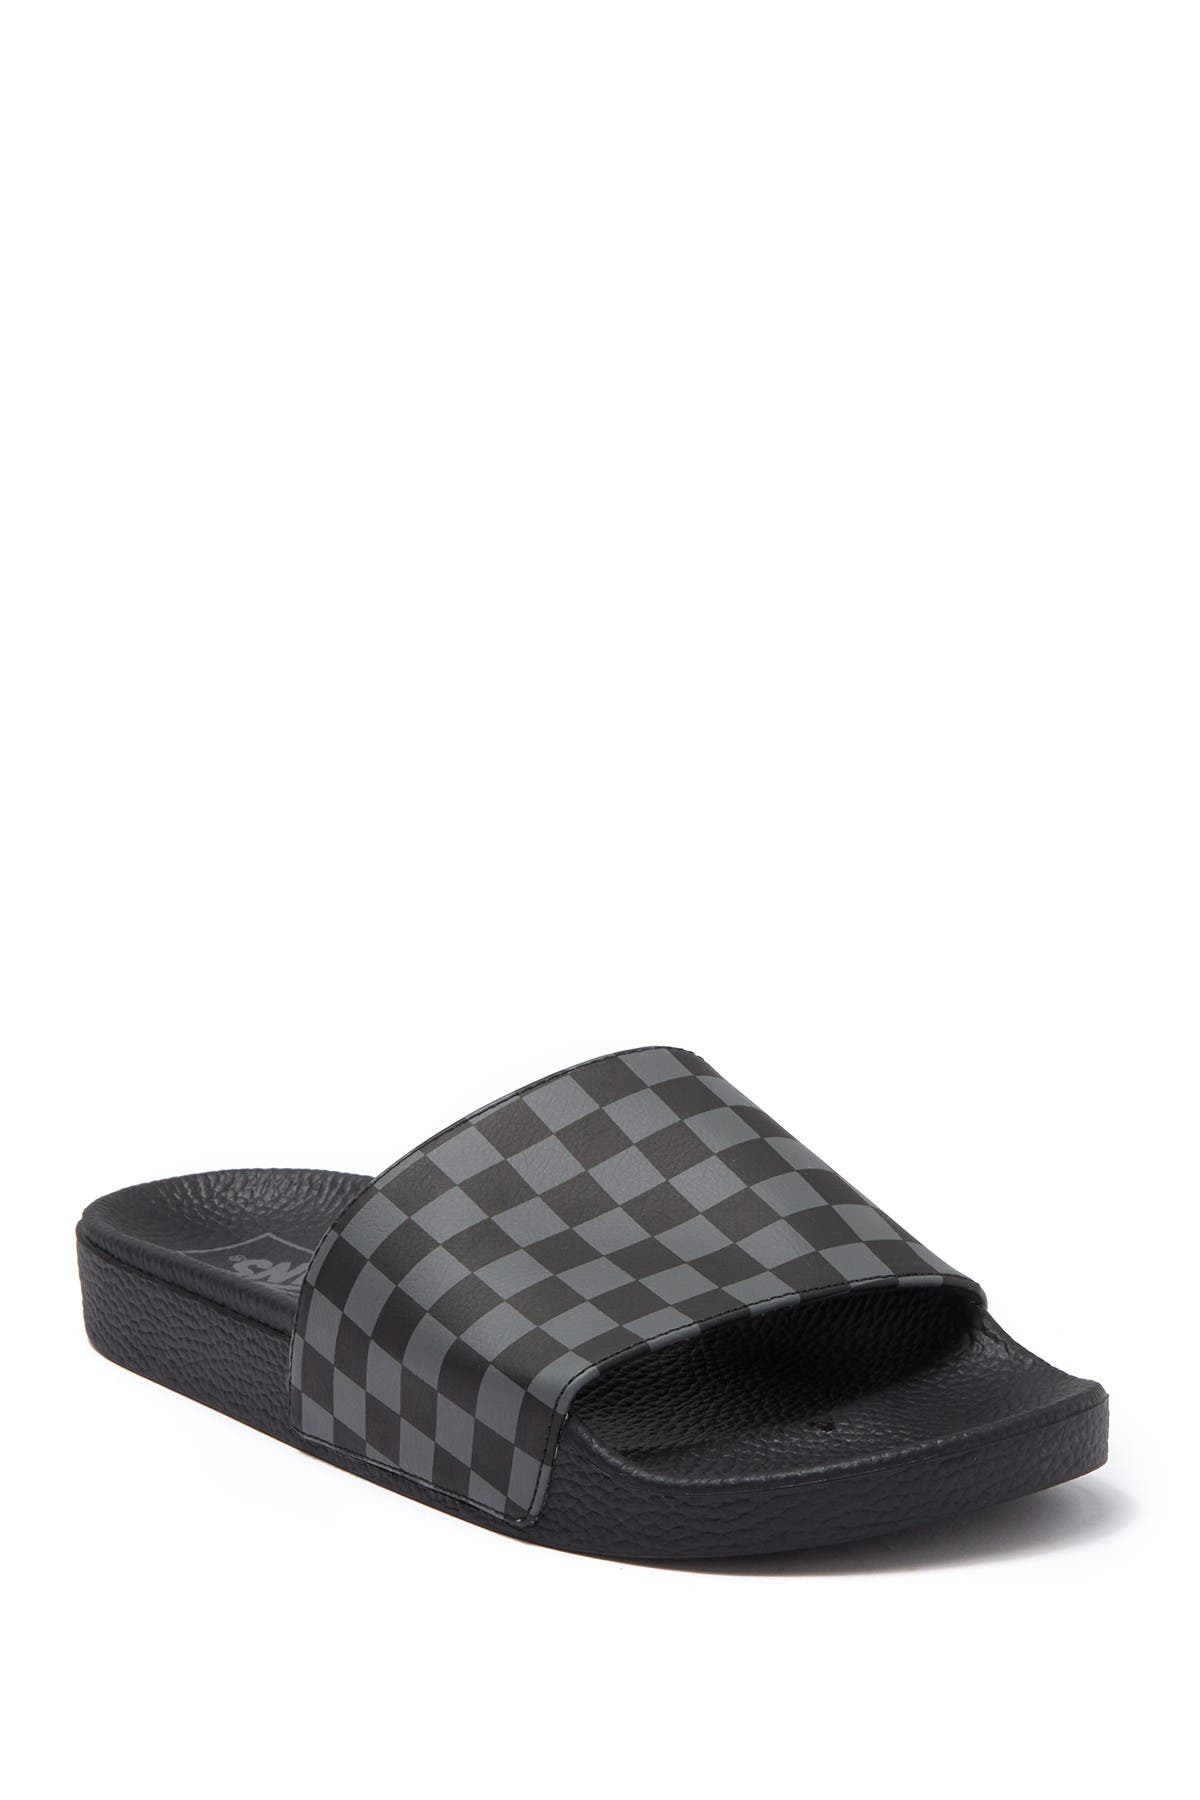 sandal vans checkerboard